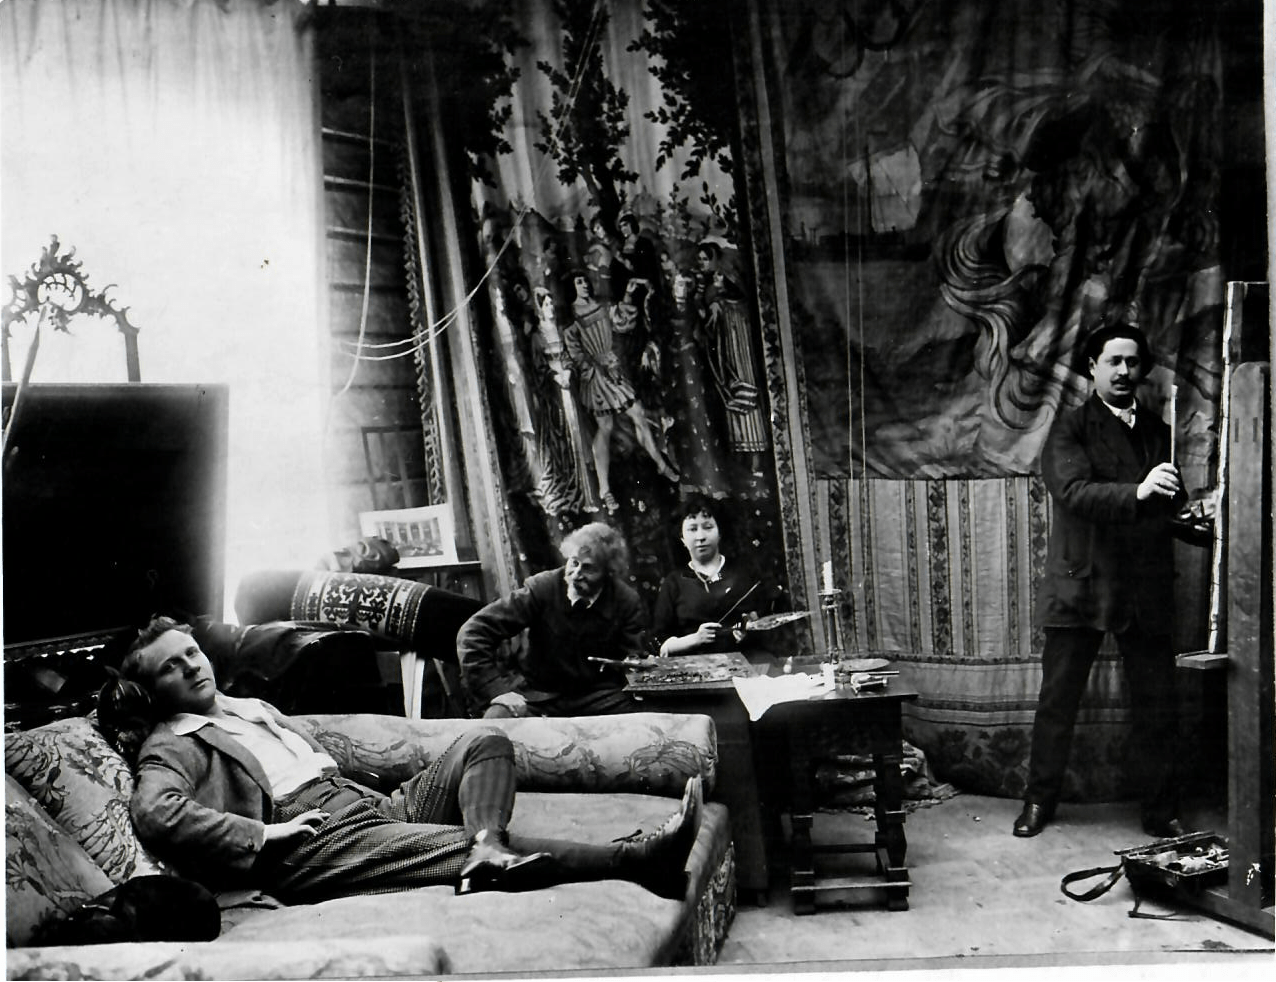 <strong>Фотография К. К. Буллы</strong><br /><p>Ю. И. Репин пишет портрет Ф. И. Шаляпина в мастерской Пенатов</p>
<p>1914</p>
<p>Научно-исследовательский музей при Российской академии художеств</p>
